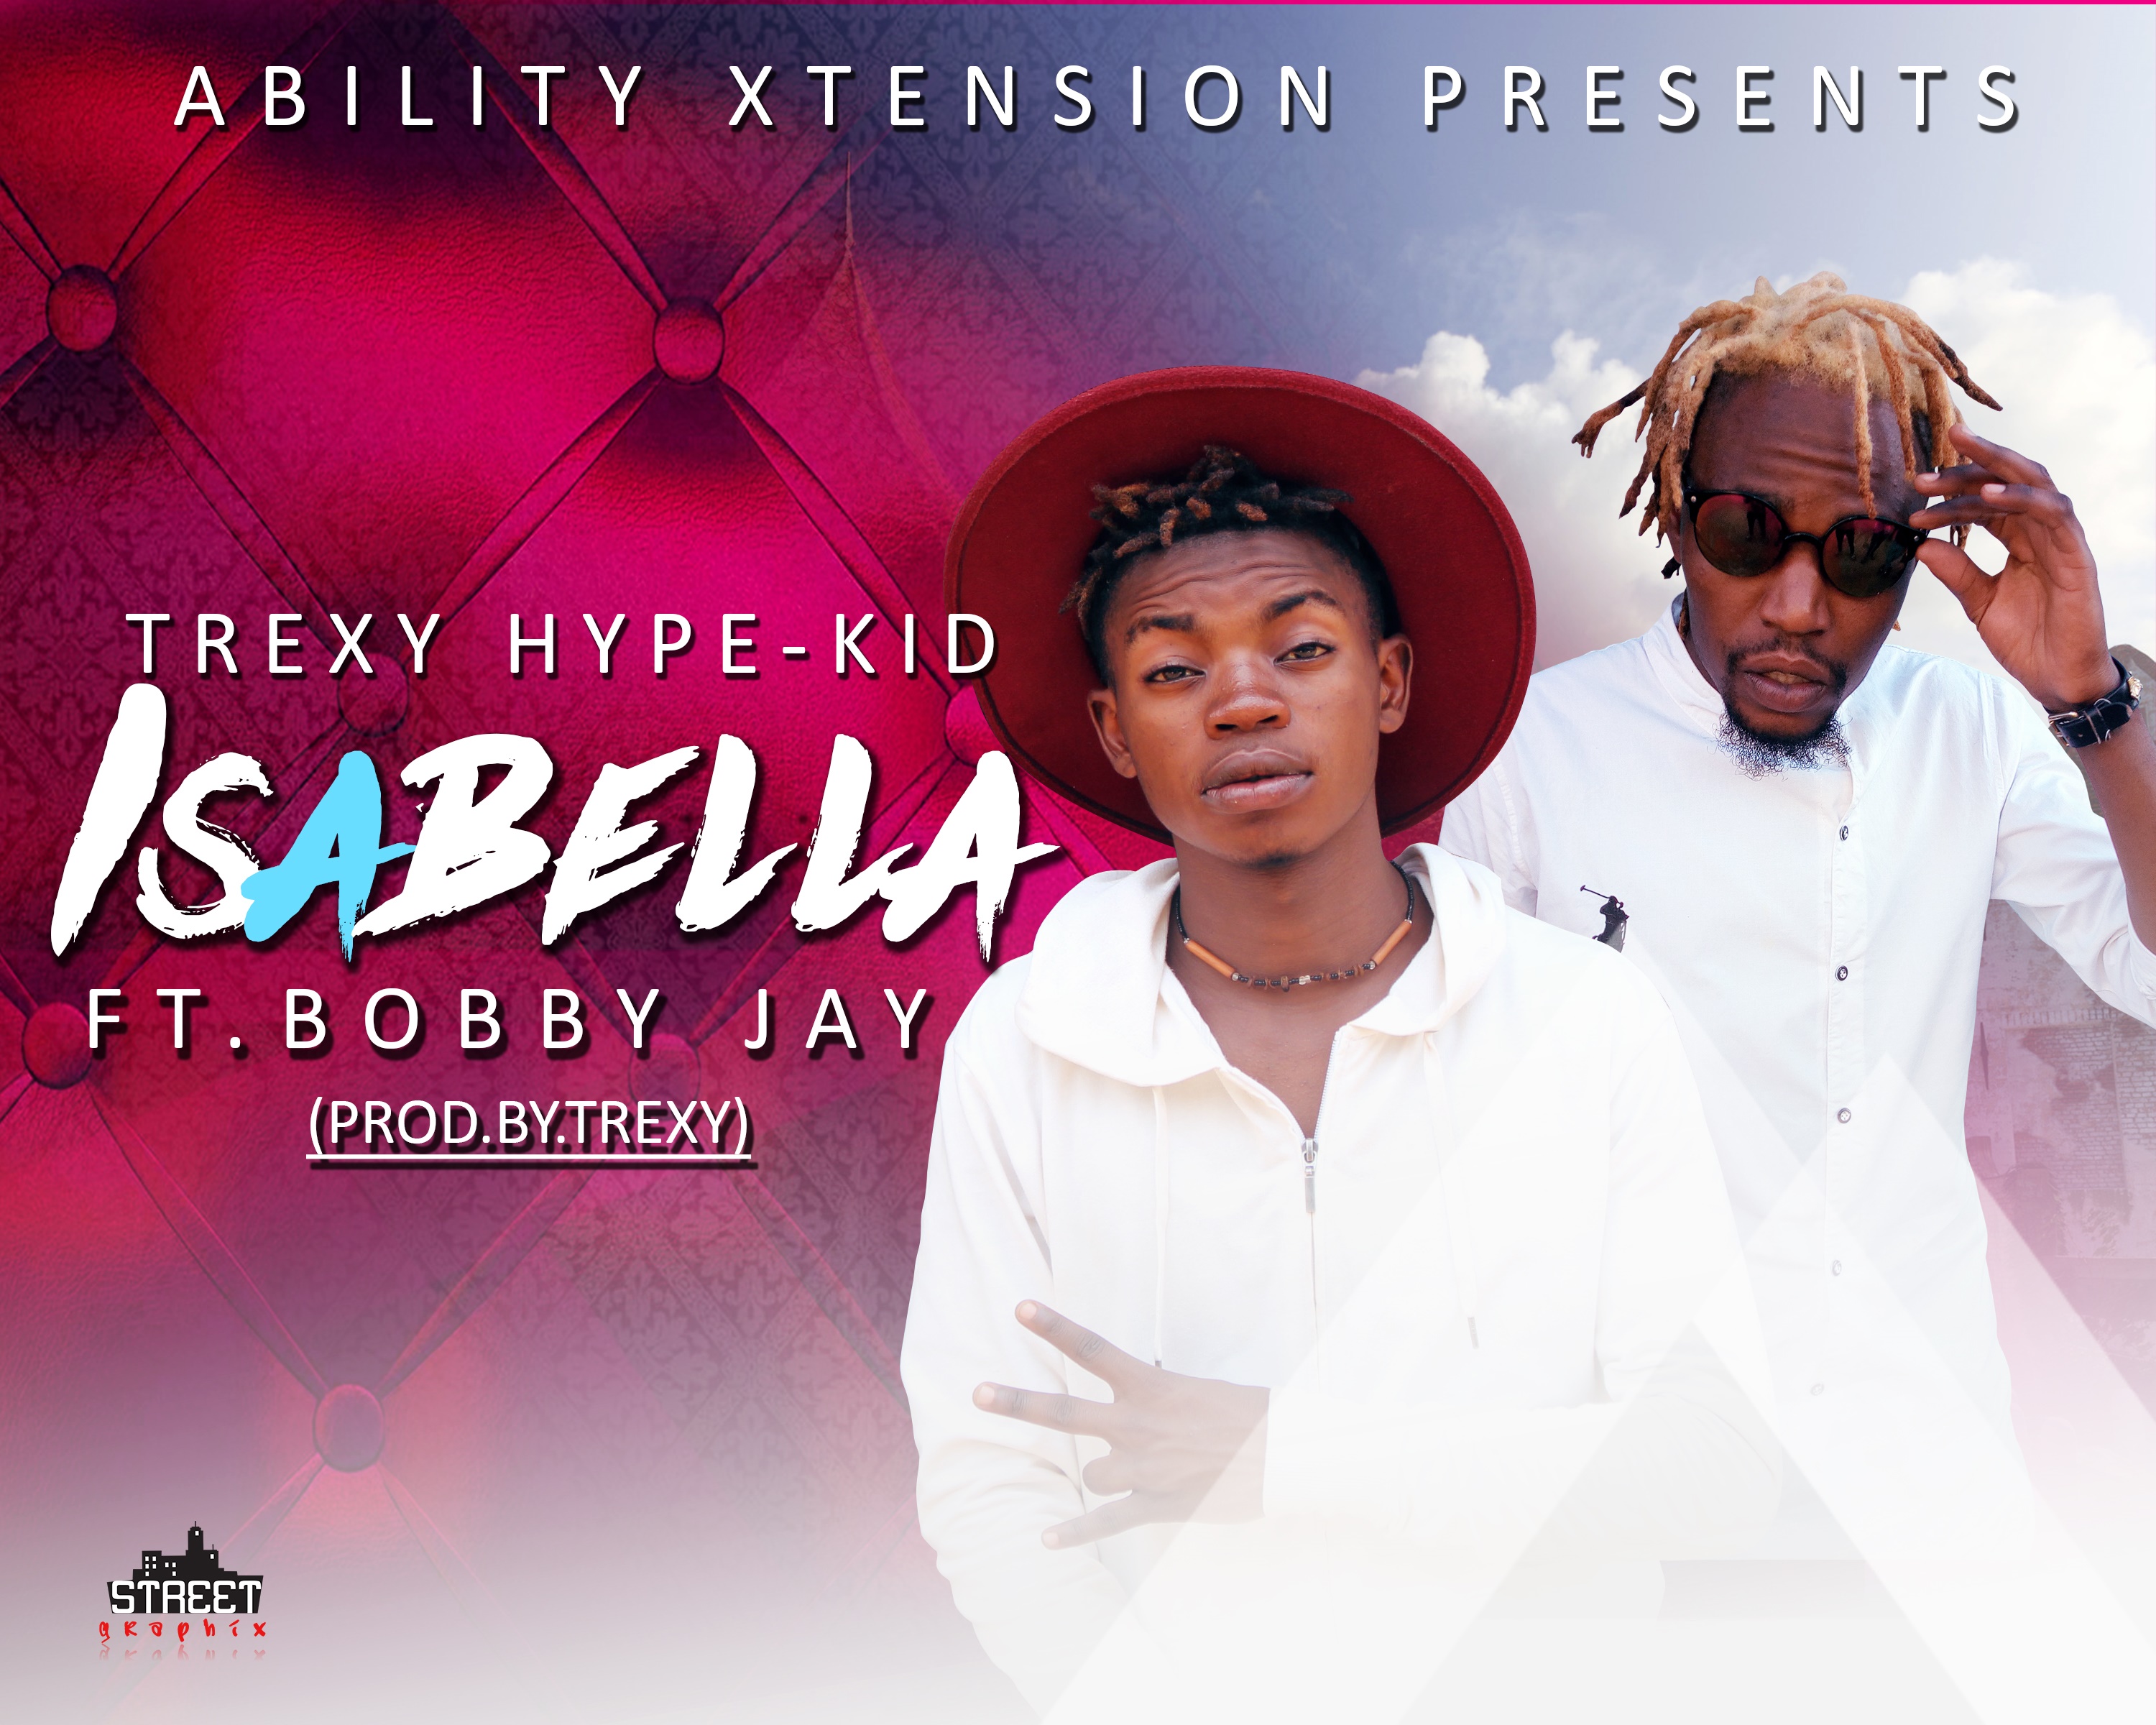 Trexy Hype-Kid – “Isabella” ft. Bobby Jay